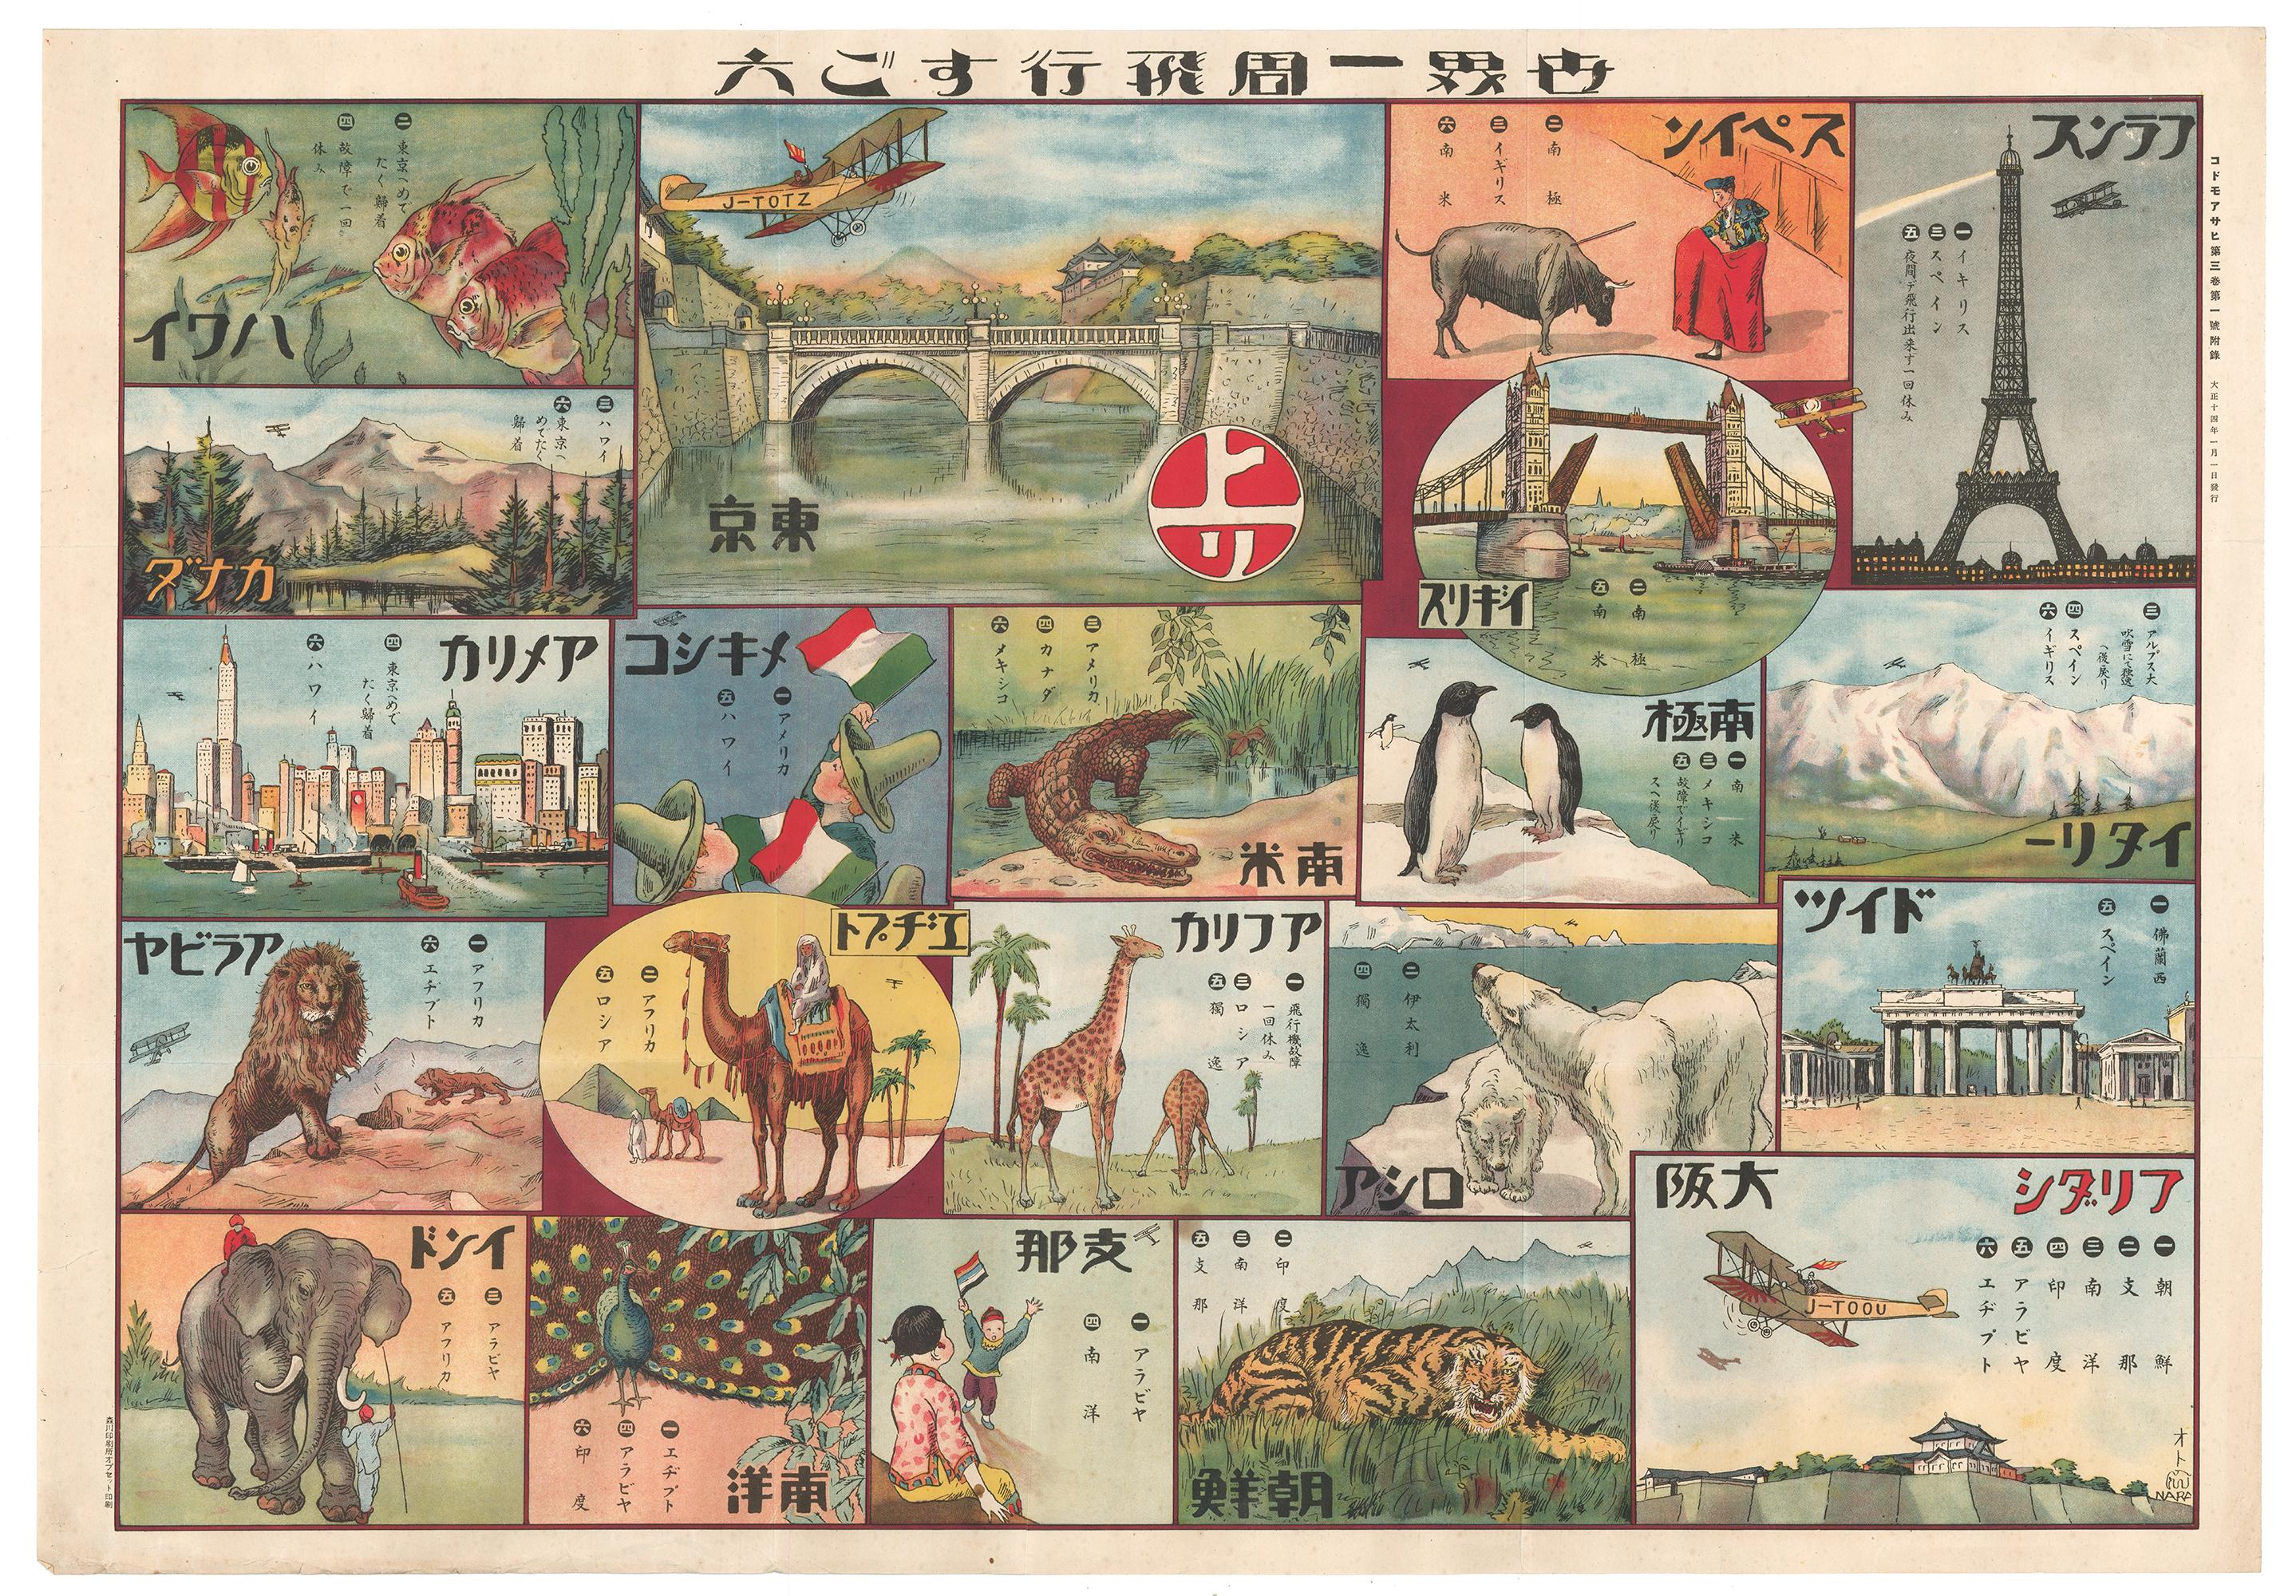 Japanisch Rund um die Welt  Sugoroku-Spielbrett mit Tiermotiven, 1925 – Print von Unknown